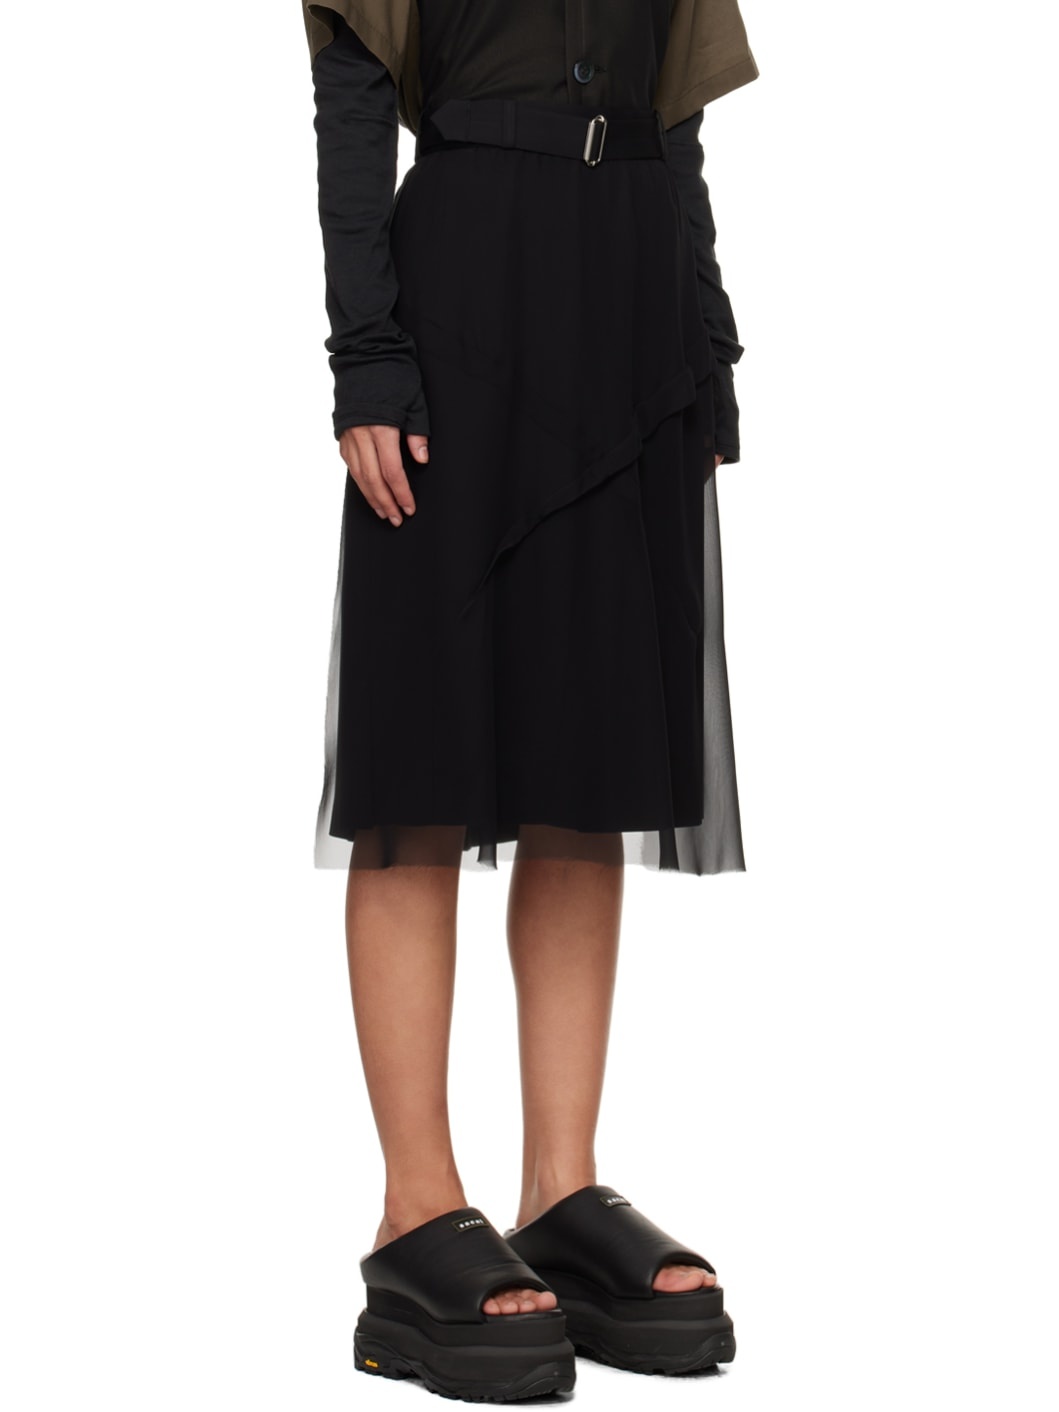 Black Layered Midi Skirt - 2